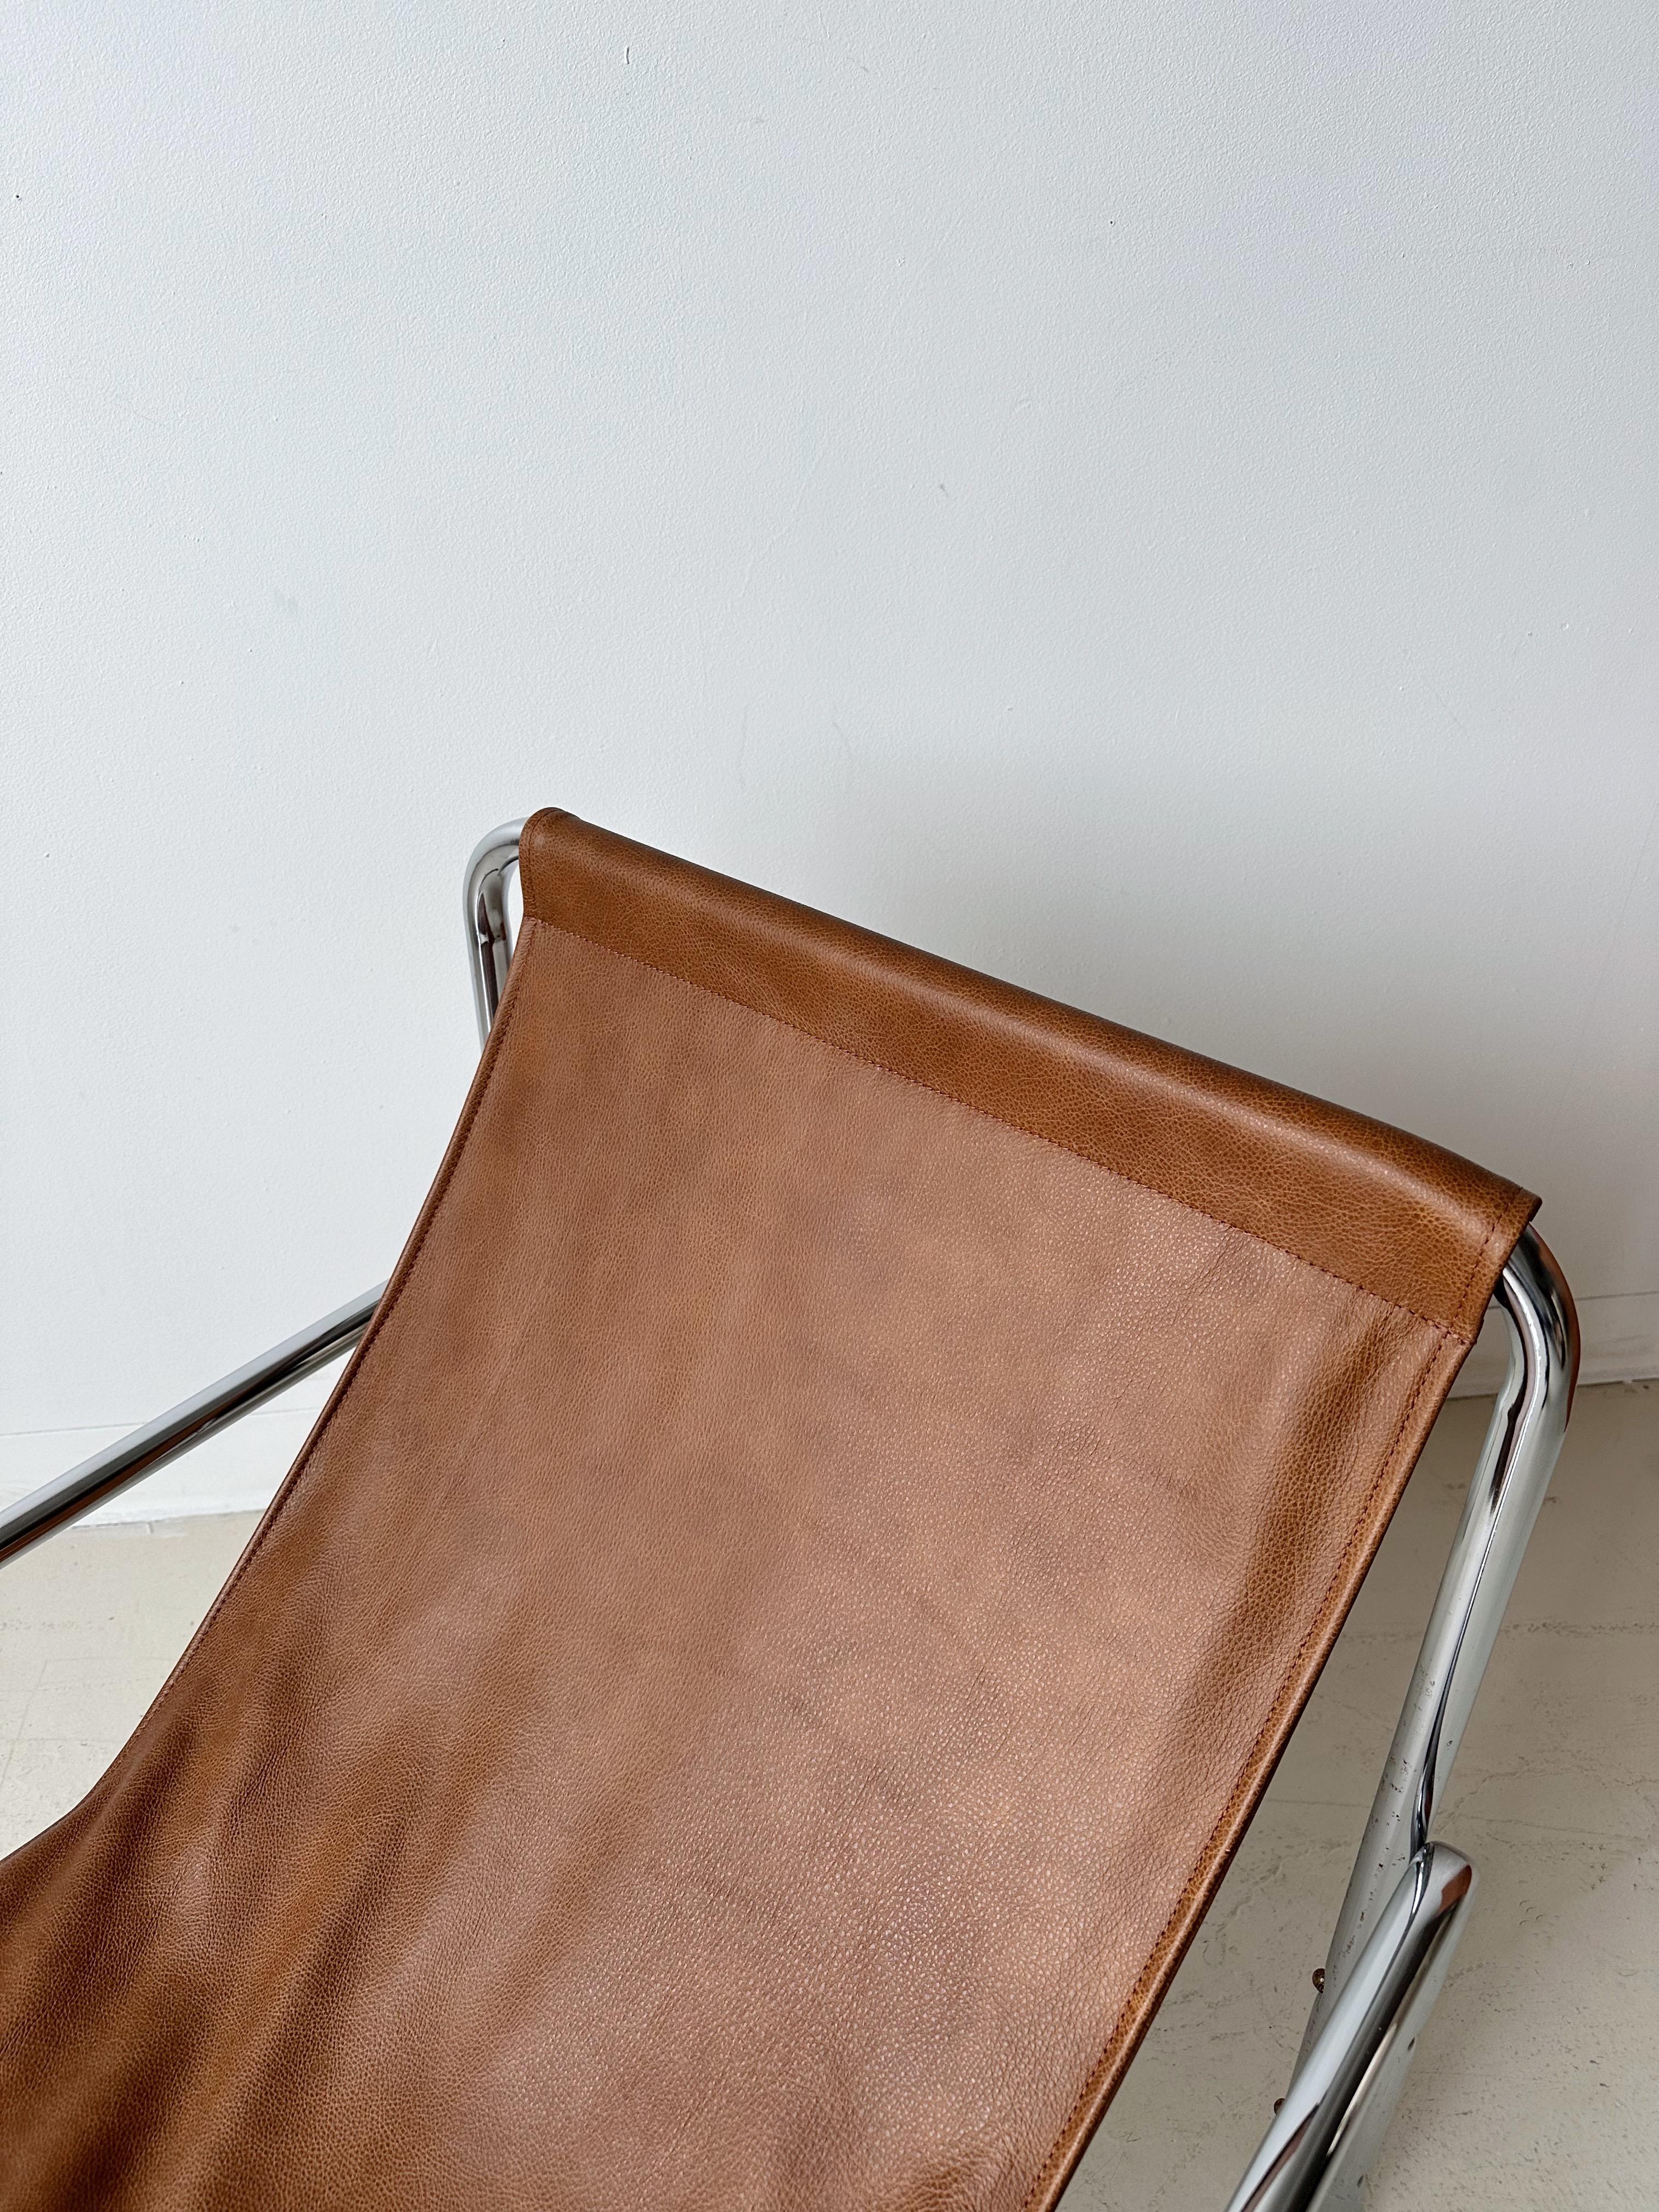 Chaise en cuir brun clair avec cadre tubulaire chromé

//


Dimensions :

26 